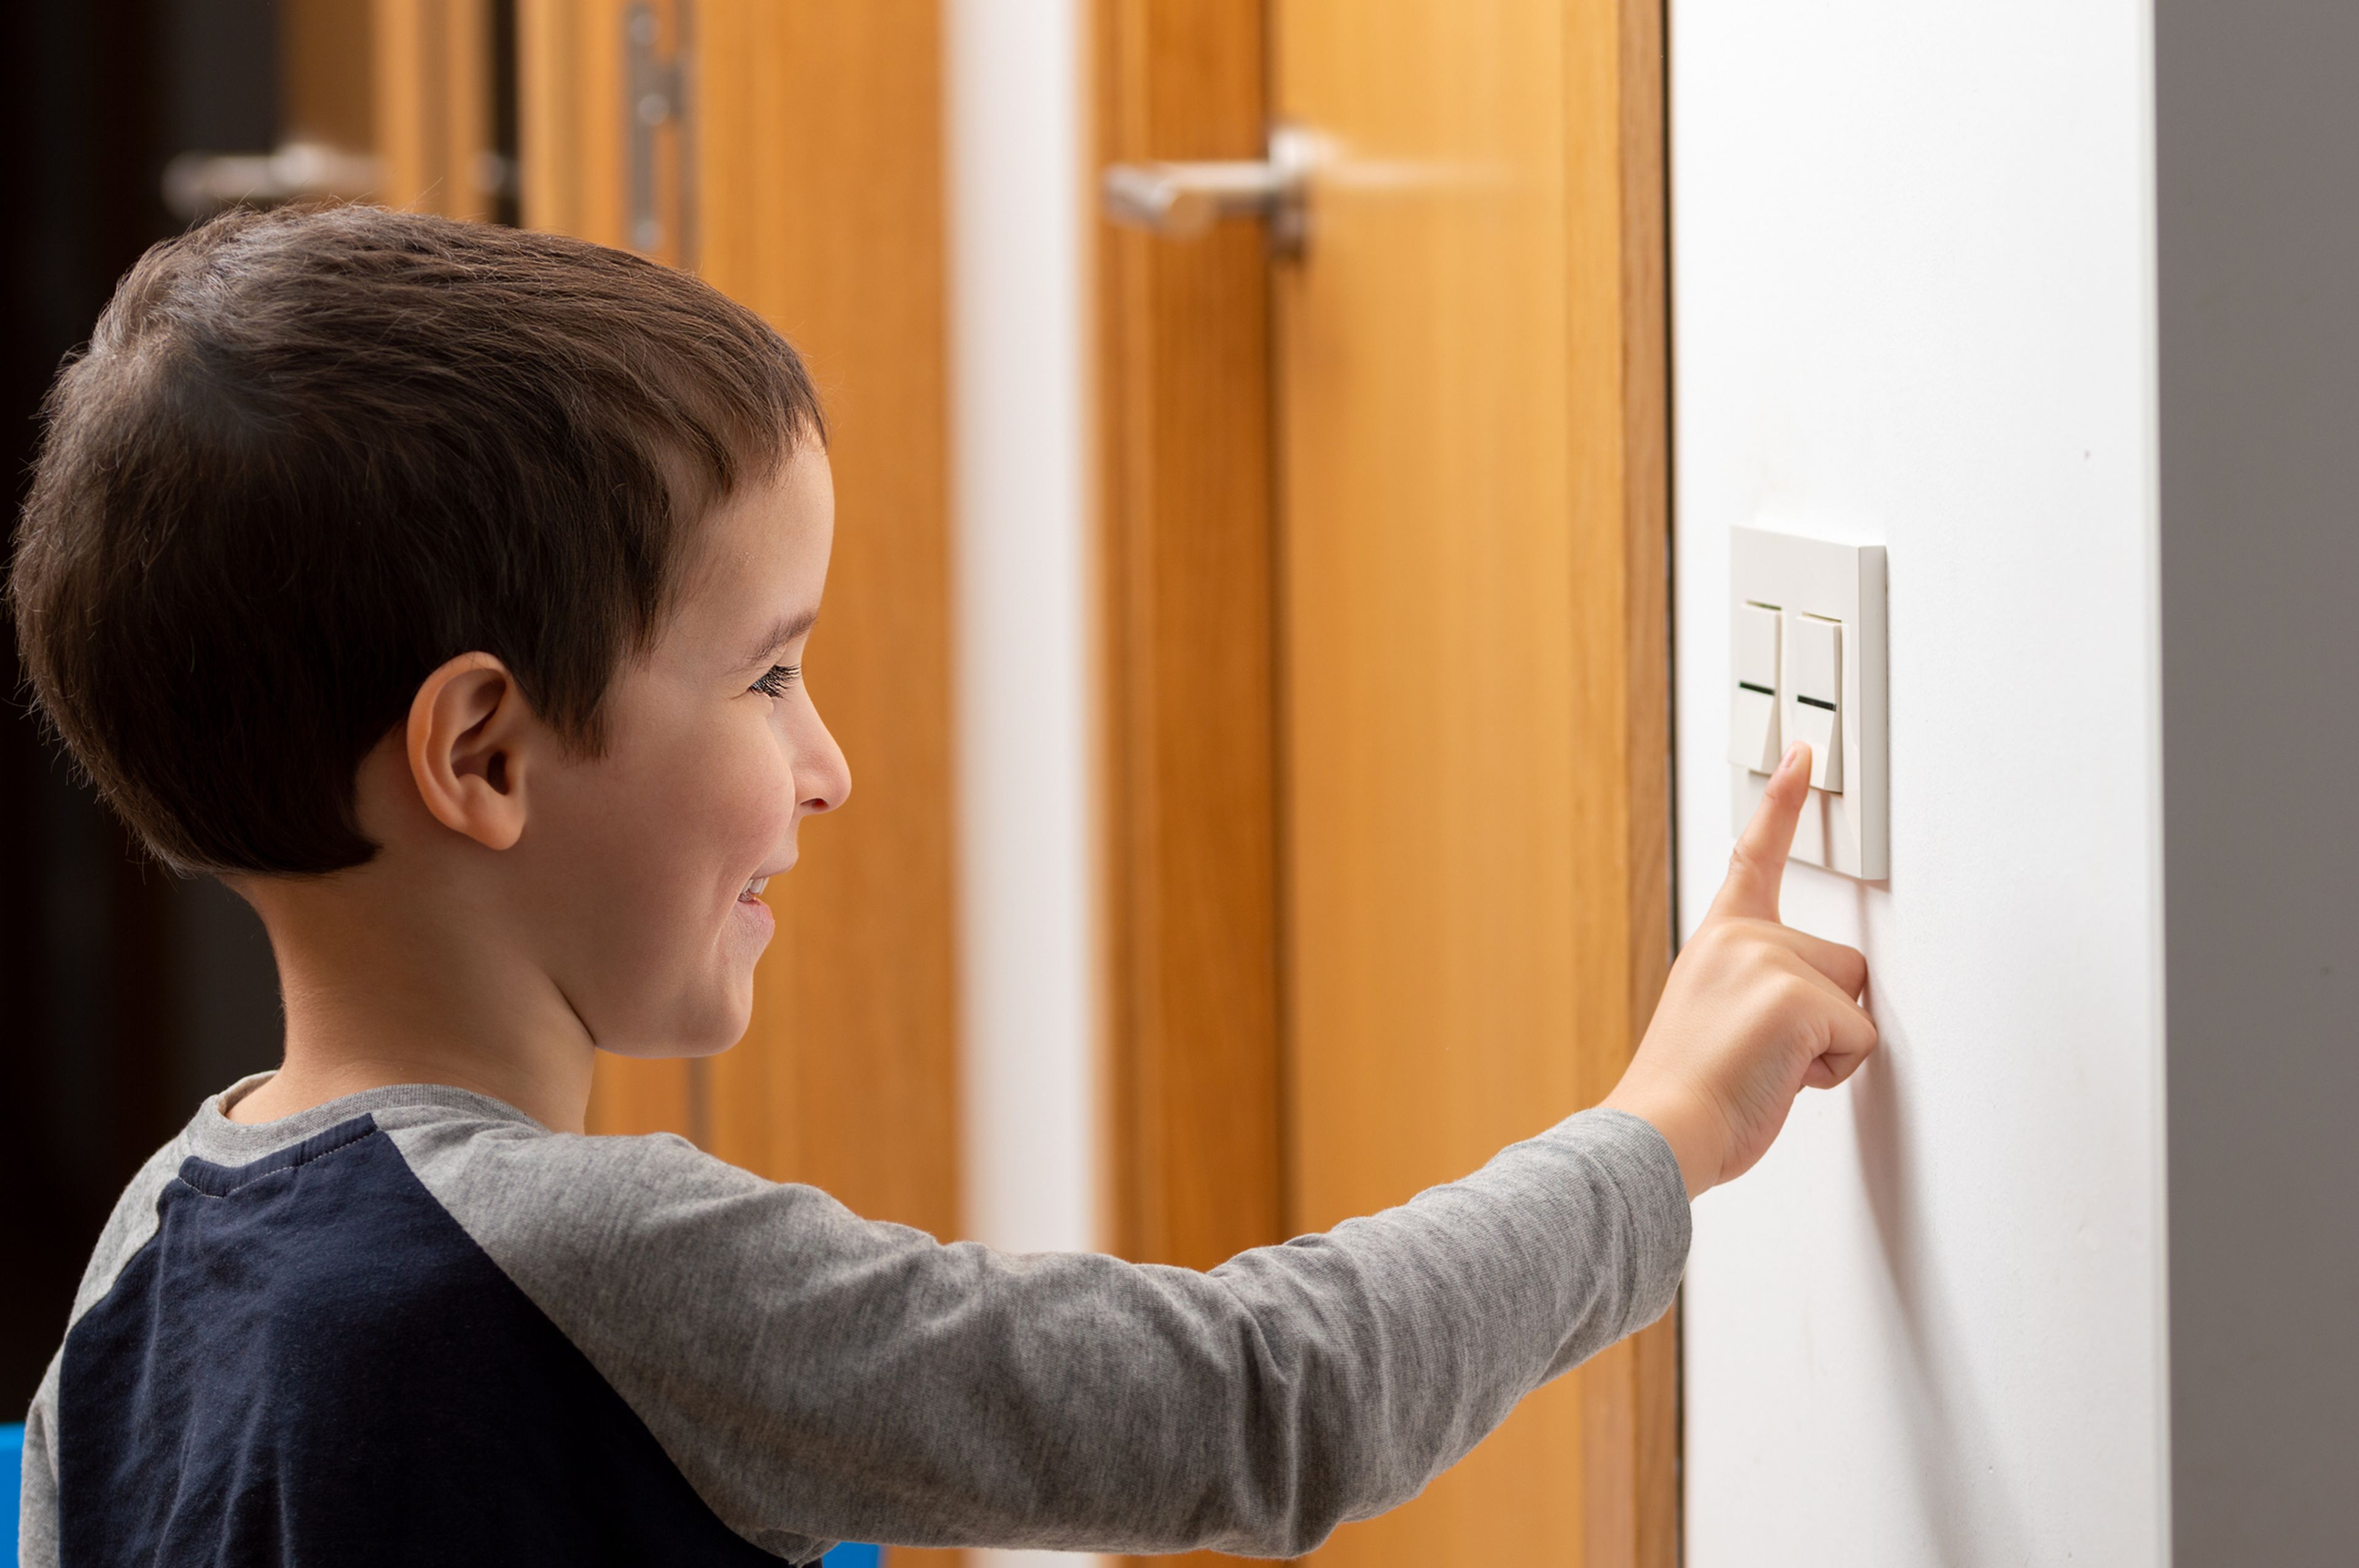 Un niño pulsa el interruptor de la luz.